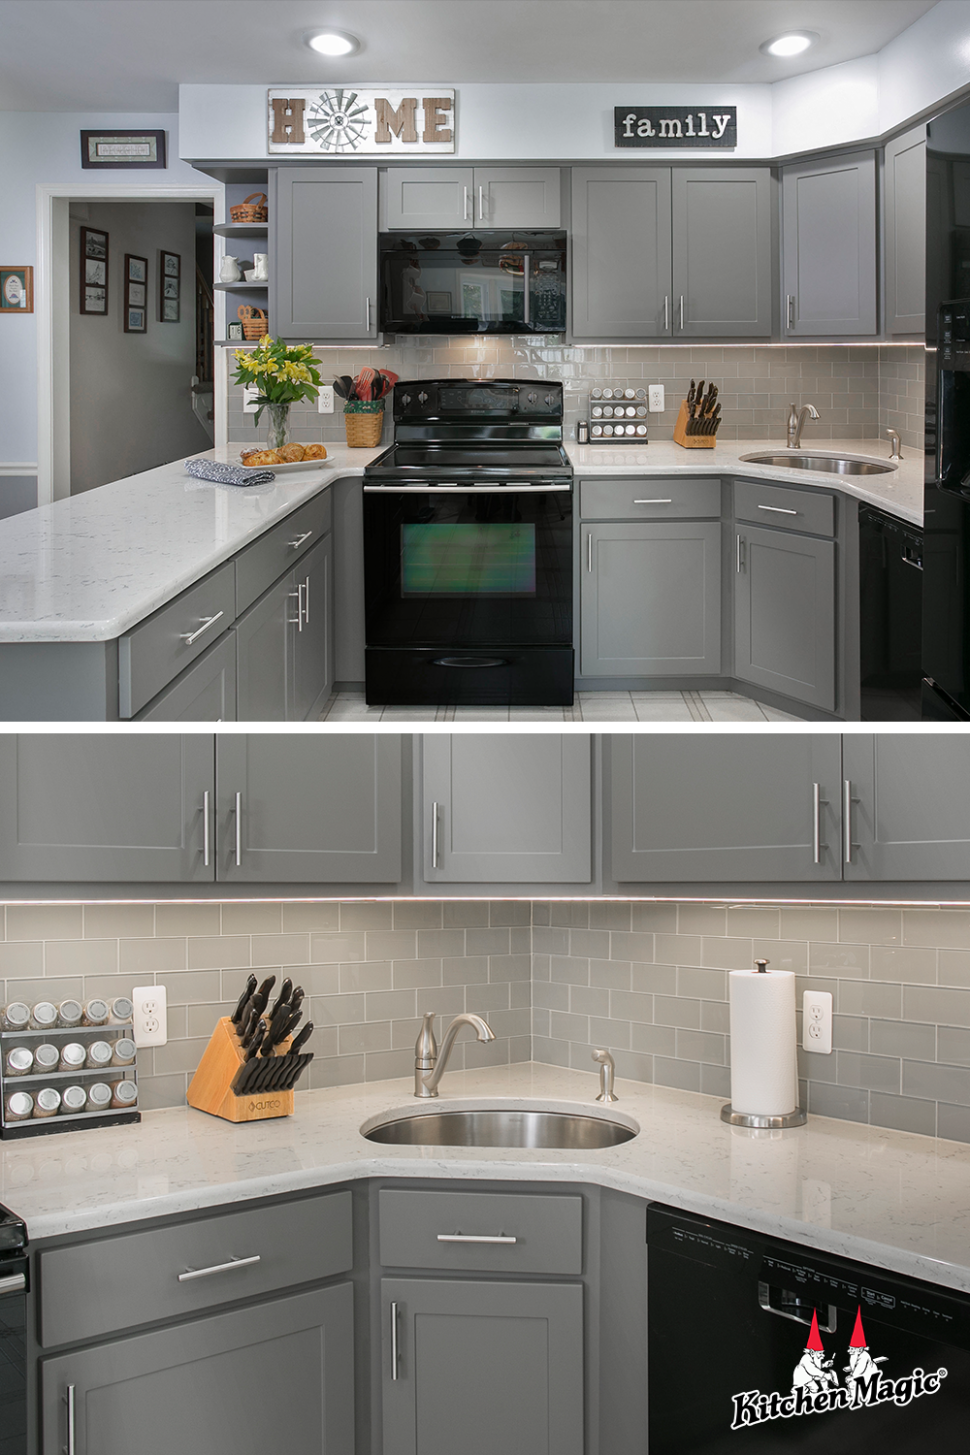 3 Gray Kitchens ideas in 3  kitchen design, kitchen, kitchen  - small gray kitchen ideas